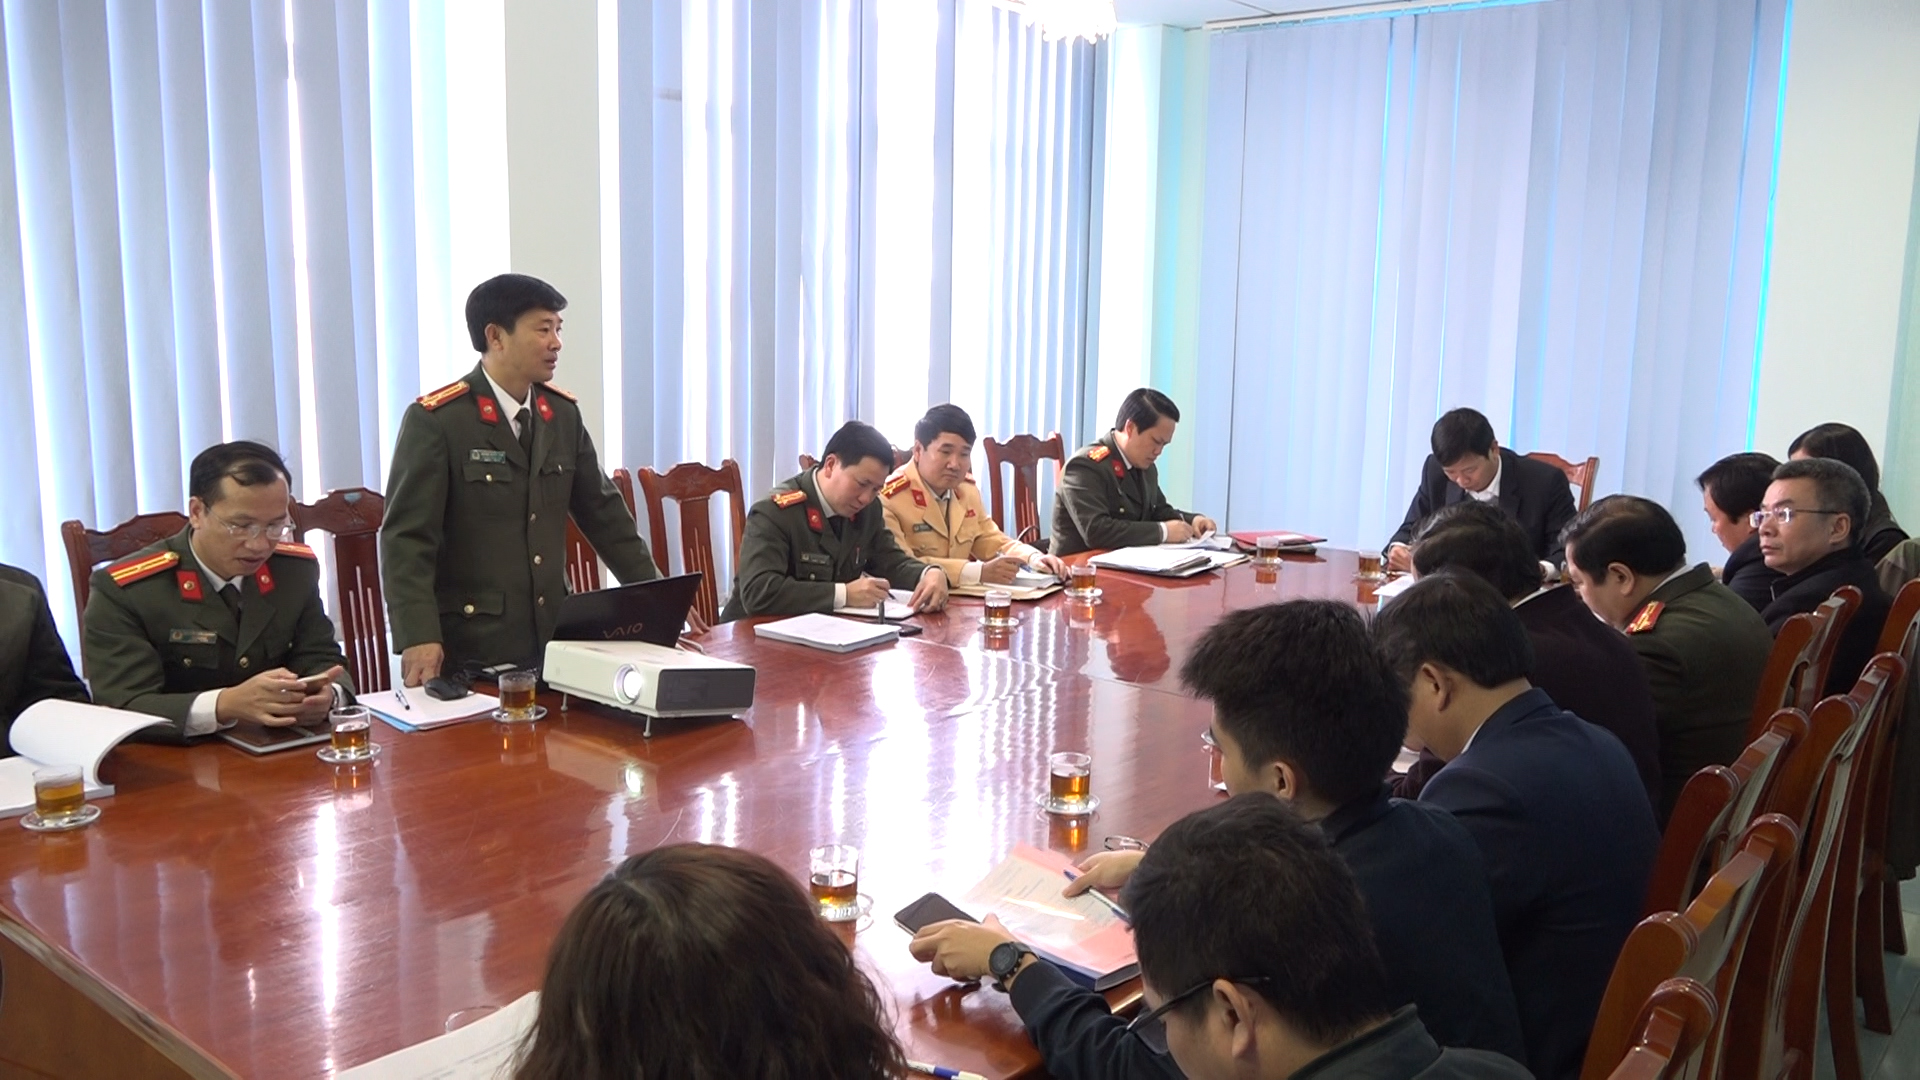  Thượng tá, Tiến sỹ Hoàng Giang Nam, chủ nhiệm đề tài báo cáo quá trình nghiên cứu trước Hội đồng nghiệm thu.